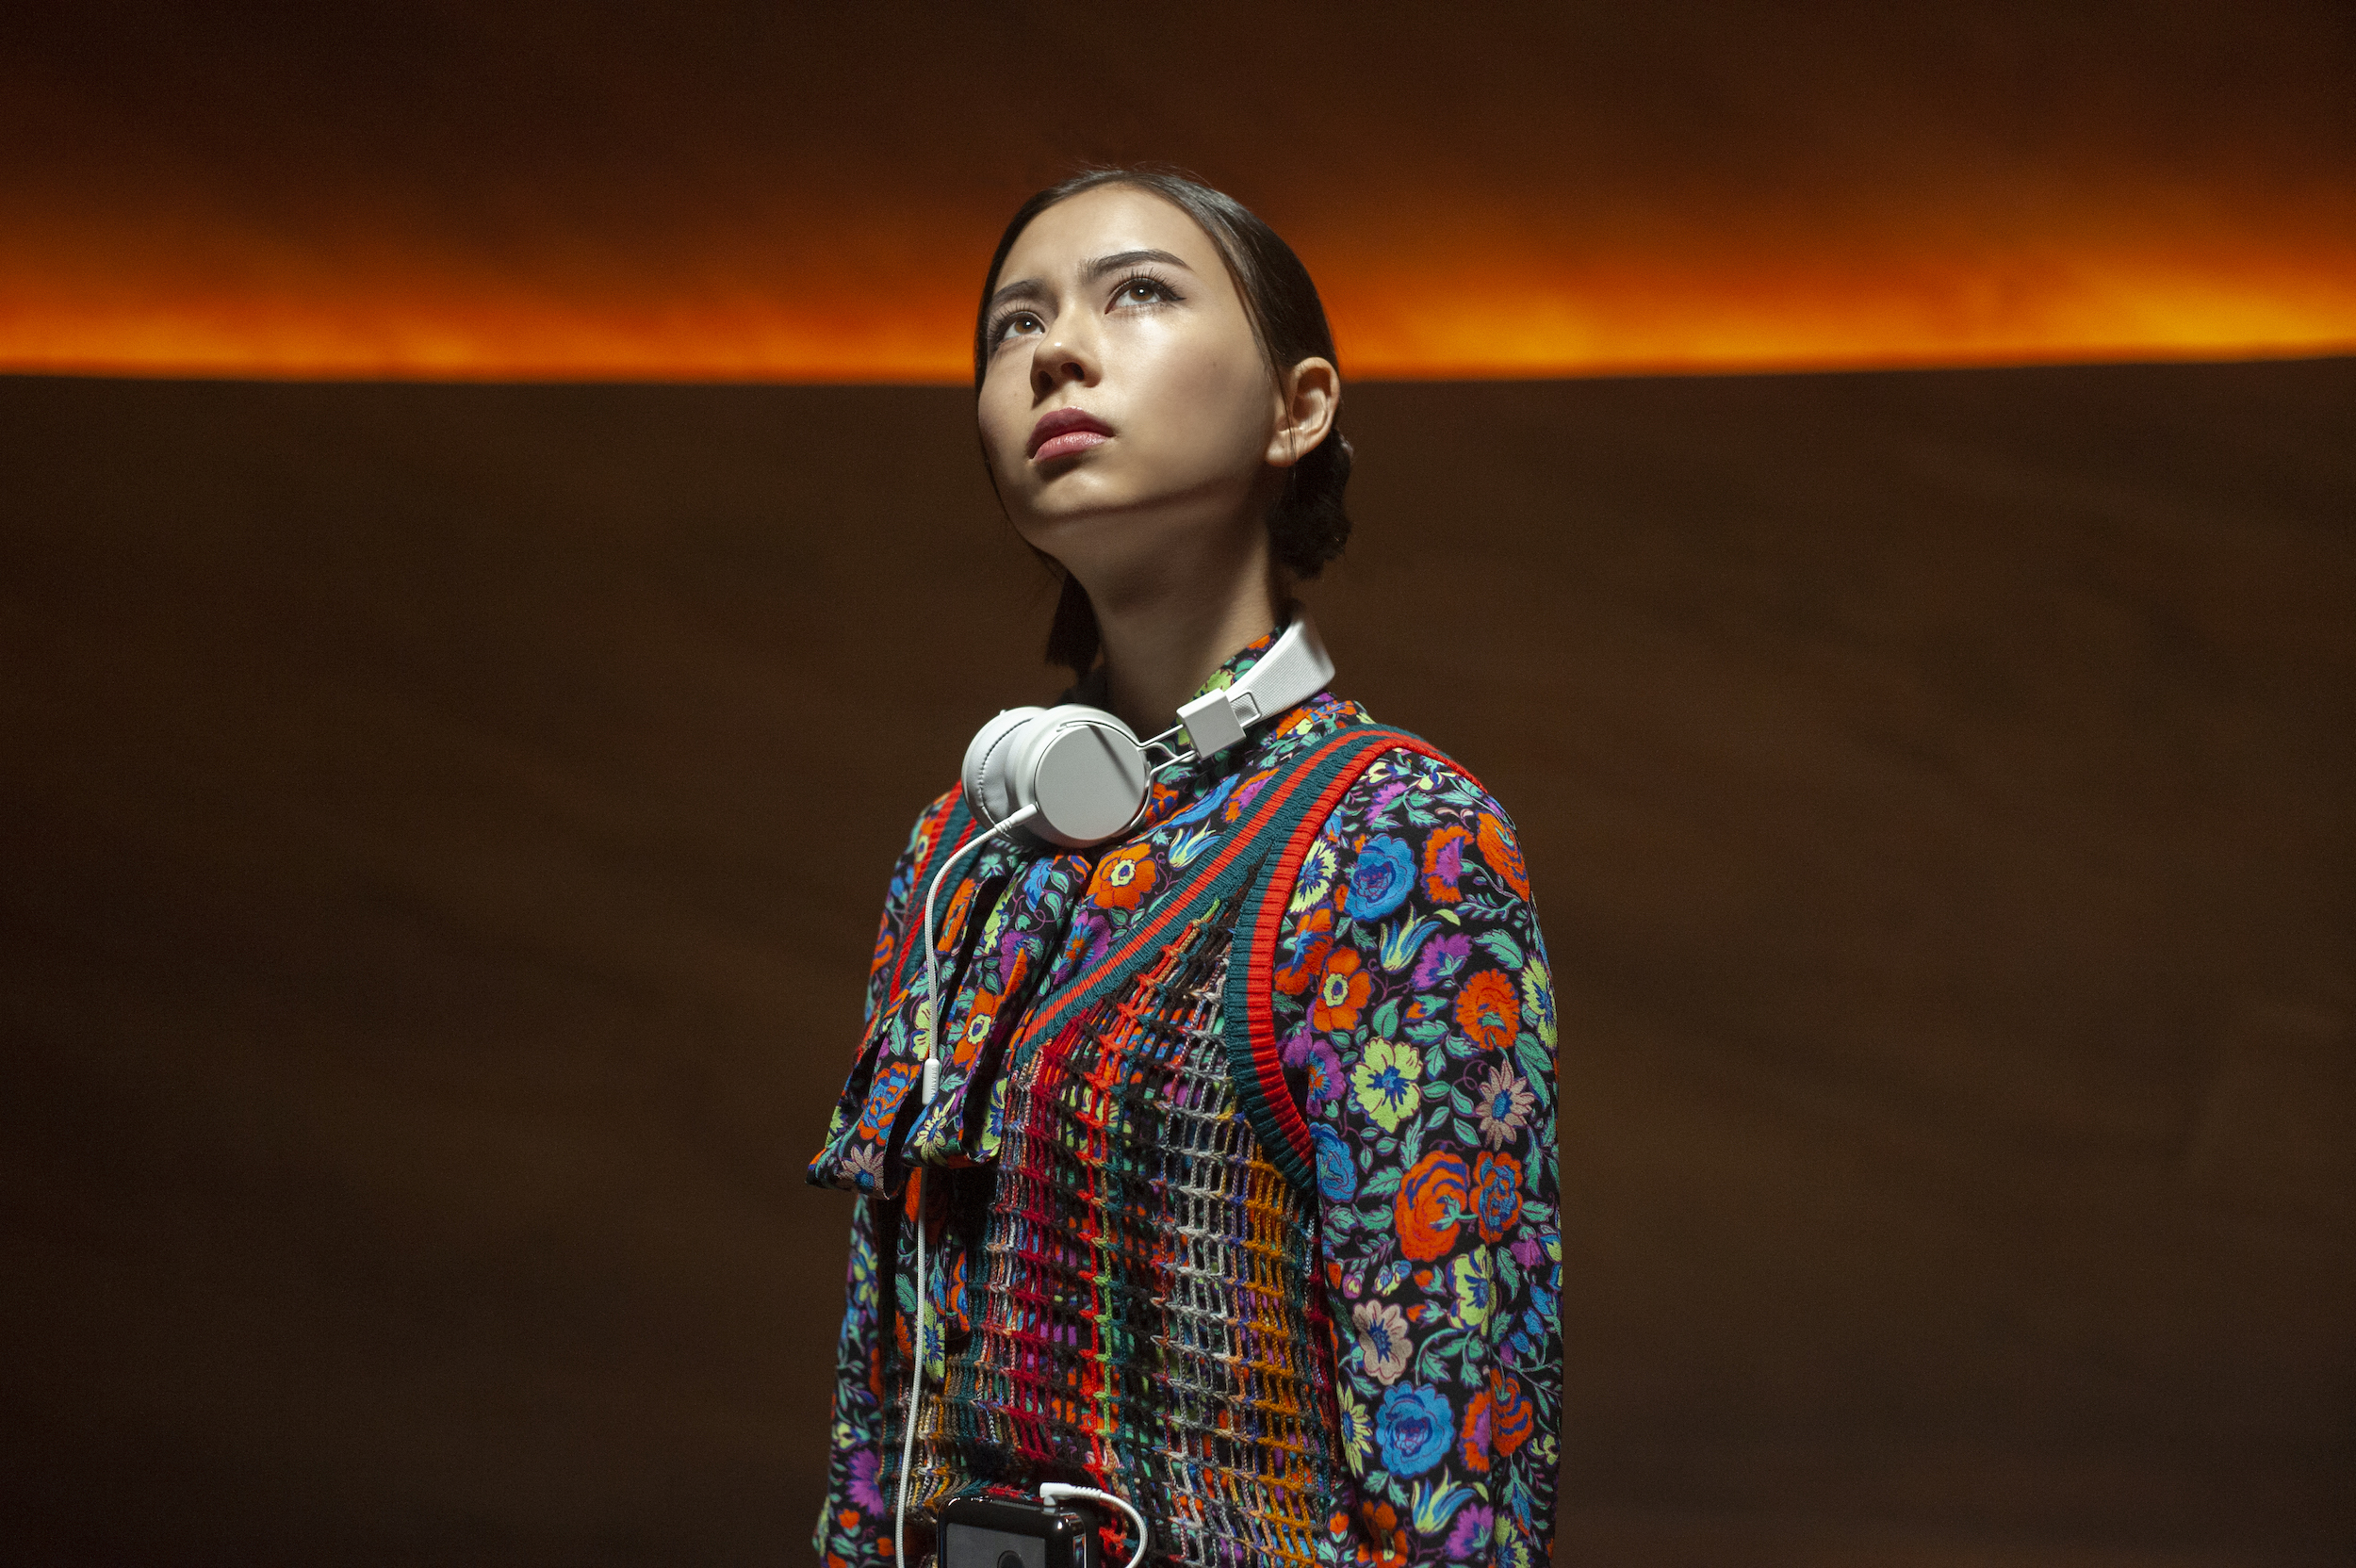 Lauren Tsai Women Actress Headphones Looking Up Asian Brunette Wallpaper:2500x1664